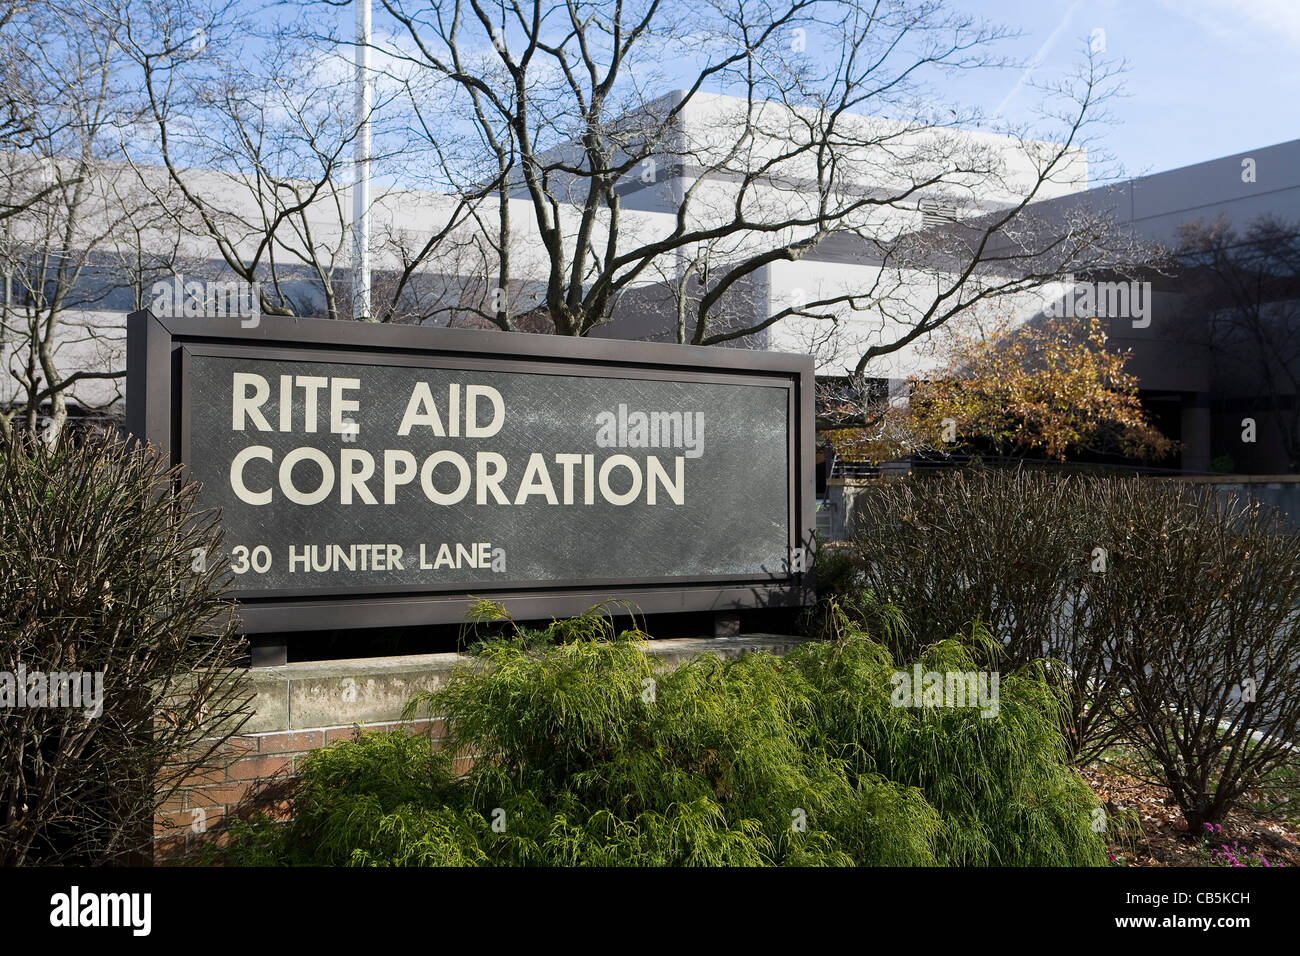 Le Rite Aid Corporation siège social. Banque D'Images